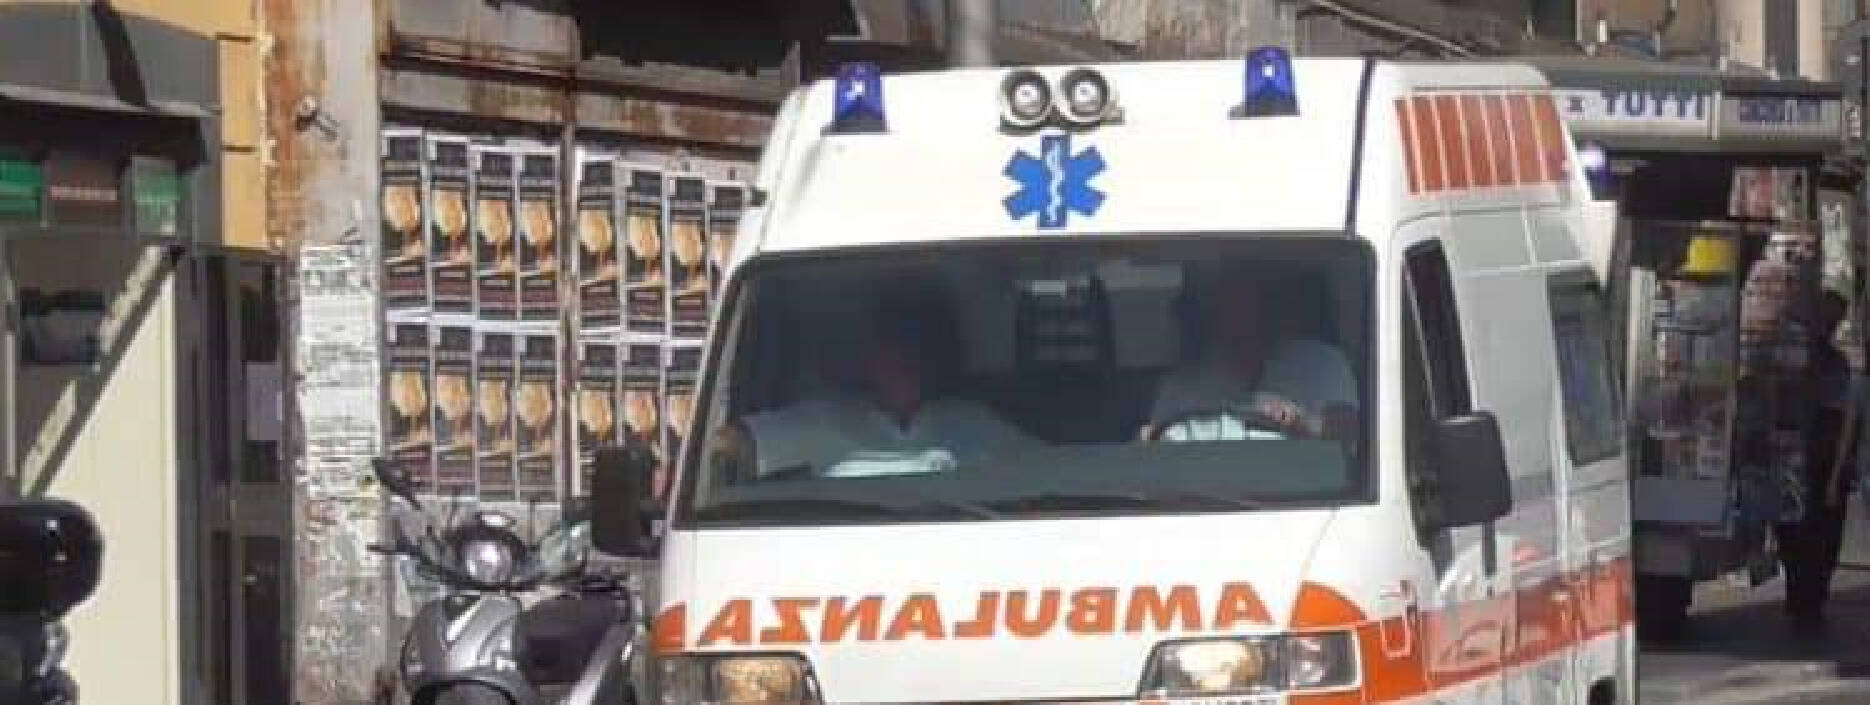 ambulanza bagni